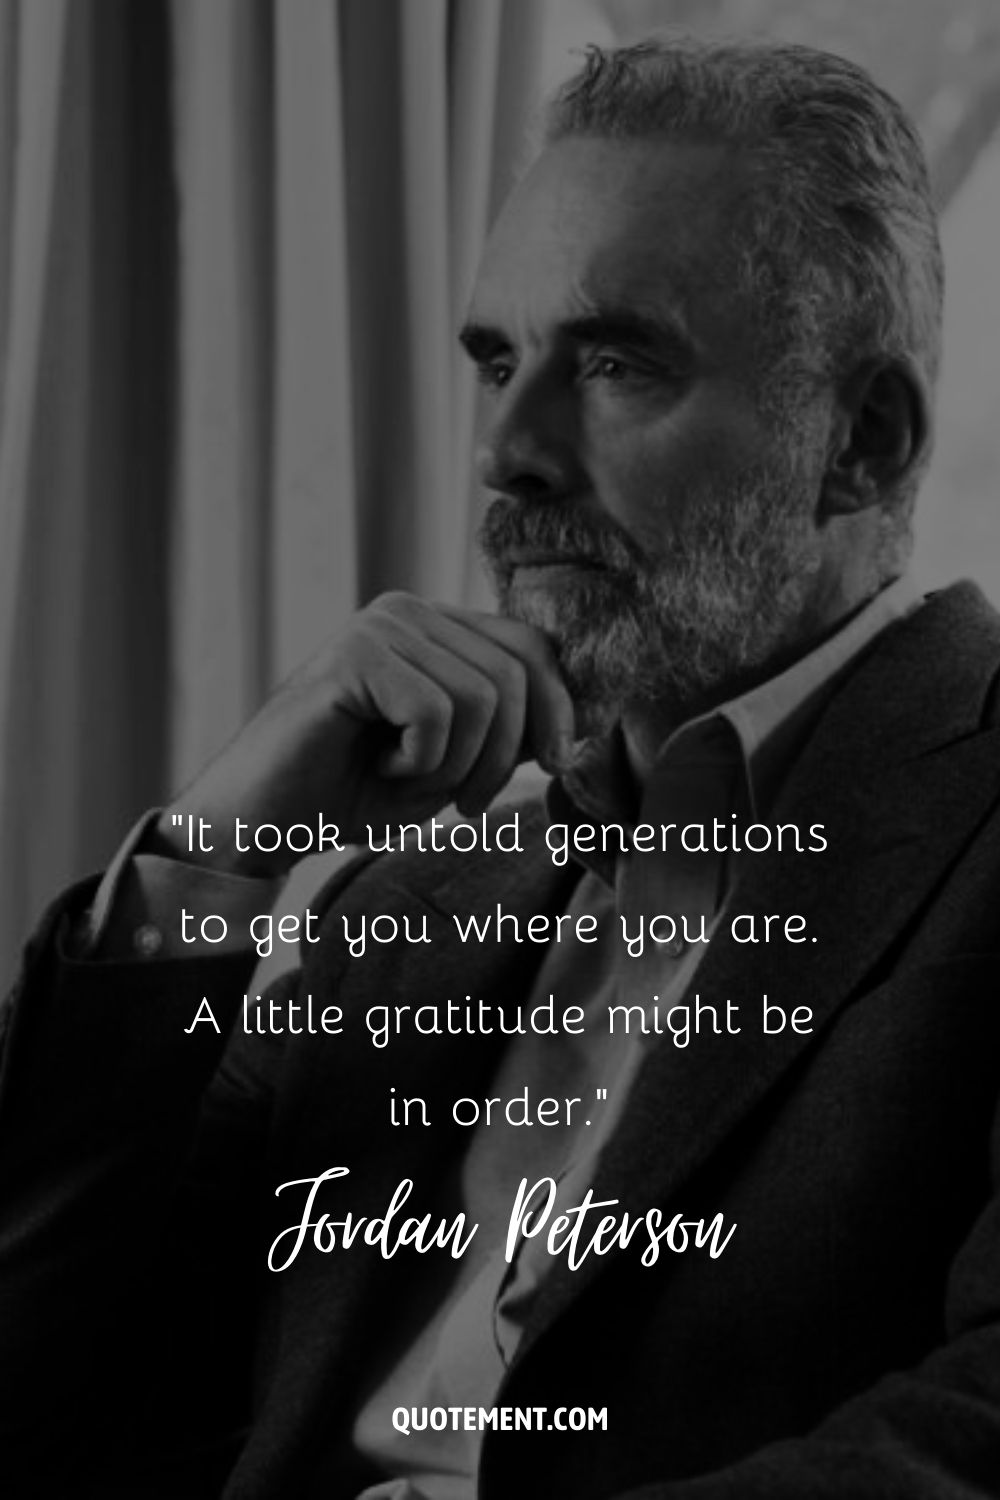 Jordan Peterson quote about gratitude.